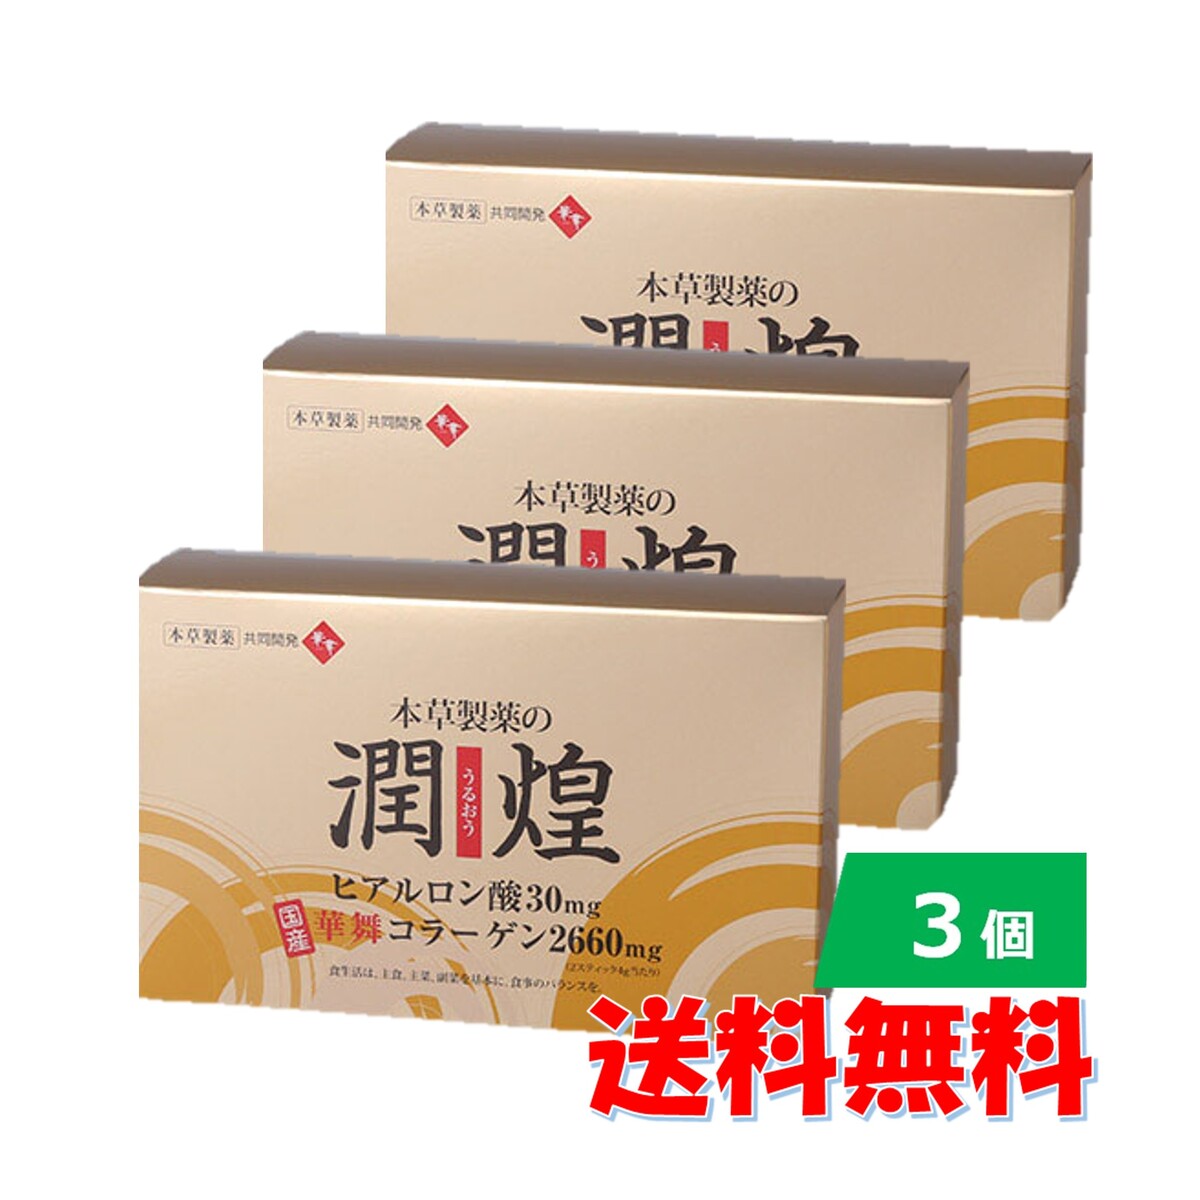 商品情報商品説明女性の美容と健康のためにはコラーゲンを食べることが一番良い方法との考えから、”食べるコラーゲン”として日本で初めて販売されたのが華舞コラーゲンです。独自の製法でコラーゲンの低分子化により、吸収率に優れています。また高温処理により脂質は0%、カロリー的にも安心です。潤煌（うるおう）の特徴1．ヒアルロン酸を30mg配合 （ 1日2包あたり ）年齢を重ねるごとに失われていく潤い。カラカラな状態だと皮膚や関節などのトラブルの原因になってしまいます。ヒアルロン酸は、わずか1gで約6リットルもの水分を保持することができます。2．華舞コラーゲン2,660mg配合 （ 1日2包あたり ）華舞コラーゲンは低分子水溶性コラーゲンですので、消化吸収されやすくなっています。3．節々に働く5つの成分を1包に凝縮ヒアルロン酸・華舞コラーゲン・N-アセチルグルコサミン・ヘスペリンジン（ビタミンP）召し上がり方健康補助食品として1日2スティックを目安に水などでお召し上がりください。内容量120g（2g×60スティック） 原材料コラーゲンペプチド(国内製造)、粉糖（グラニュー糖、デキストリン）レモン果汁（デキストリン、レモン果汁）、イヌリン、N-アセチルグルコサミン、ミカン果皮末/クエン酸、ヒアルロン酸、酵素処理ヘスペリジン、香料、増粘剤（キサンタンガム）、（一部にゼラチン・えび・かに・大豆を含む）栄養成分表示(1スティック2g当たり)エネルギー・・・7.56kcal炭水化物・・・0.46gたんぱく質・・・1.42g食塩相当量・・・0.0051g脂質・・・0.01g成分・分量(2スティック4gあたり)ヒアルロン酸:30mg　華舞コラーゲン:2,660mgアレルゲンえび、かに、大豆 原産国日本使用上の注意●乳幼児の手の届かないところへ置いてください。●食物アレルギーの方、薬を服用したり通院中の方は、お召し上がりになる前にお医者様とご相談ください。●食品のため衛生的な環境でお取扱いください。●本品は吸湿性の高い粉末タイプのため、開封したスティックは一度に使い切ってください。●本品は原材料の性質上、外観やにおいに多少の違いが生じる場合がございます。保管及び取扱上の注意●直射日光、高温多湿をさけ、涼しい所で保存して下さい。発売元本草製薬株式会社文　責株式会社IDK0297-20-7855この商品は 【3個セット】本草製薬の 潤煌 (うるおう) ヒアルロン酸 華舞コラーゲン 120g 2g×60 スティック　国産 コラーゲンの老舗 低分子コラーゲン N-アセチルグルコサミン ヘスペリンジン（ビタミンP） サプリ ポイント 潤煌/うるおう/美容サプリメント/国産原料/華舞/本草製薬/活力がある毎日/スティックタイプ/水無で飲める/持ち運び/携帯/国産原料/美容/健康/サプリメント ショップからのメッセージ 納期について 4